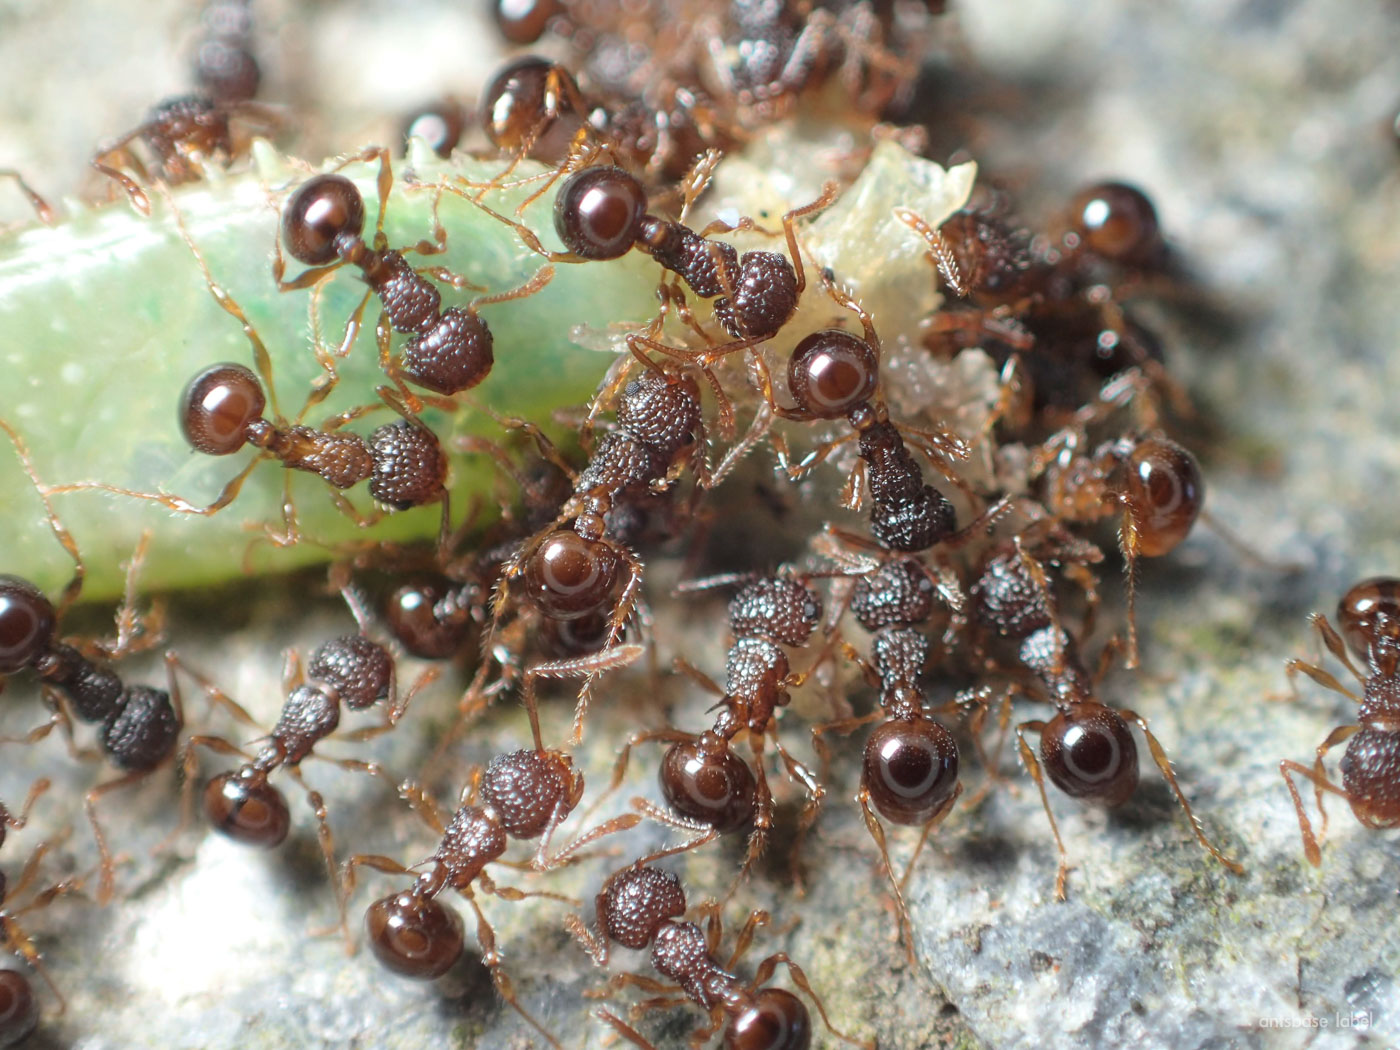 日本の小さいアリはどんな種類がいる？【よく見る蟻を解説】